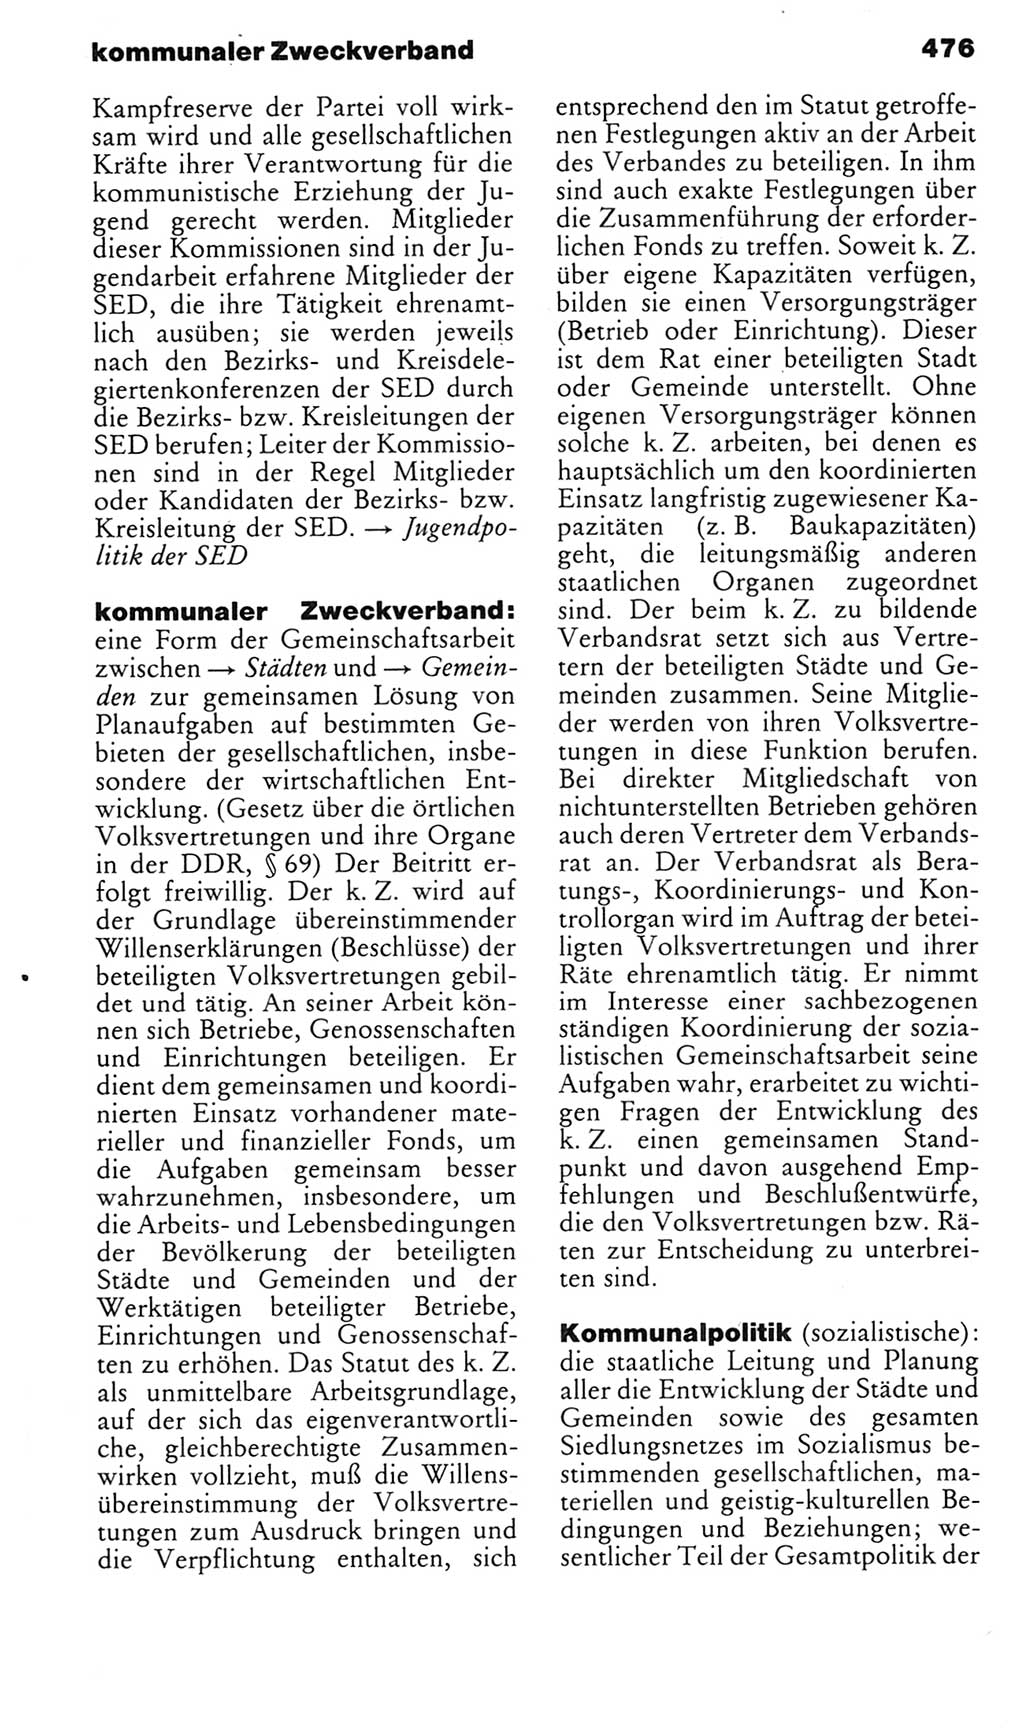 Kleines politisches Wörterbuch [Deutsche Demokratische Republik (DDR)] 1985, Seite 476 (Kl. pol. Wb. DDR 1985, S. 476)